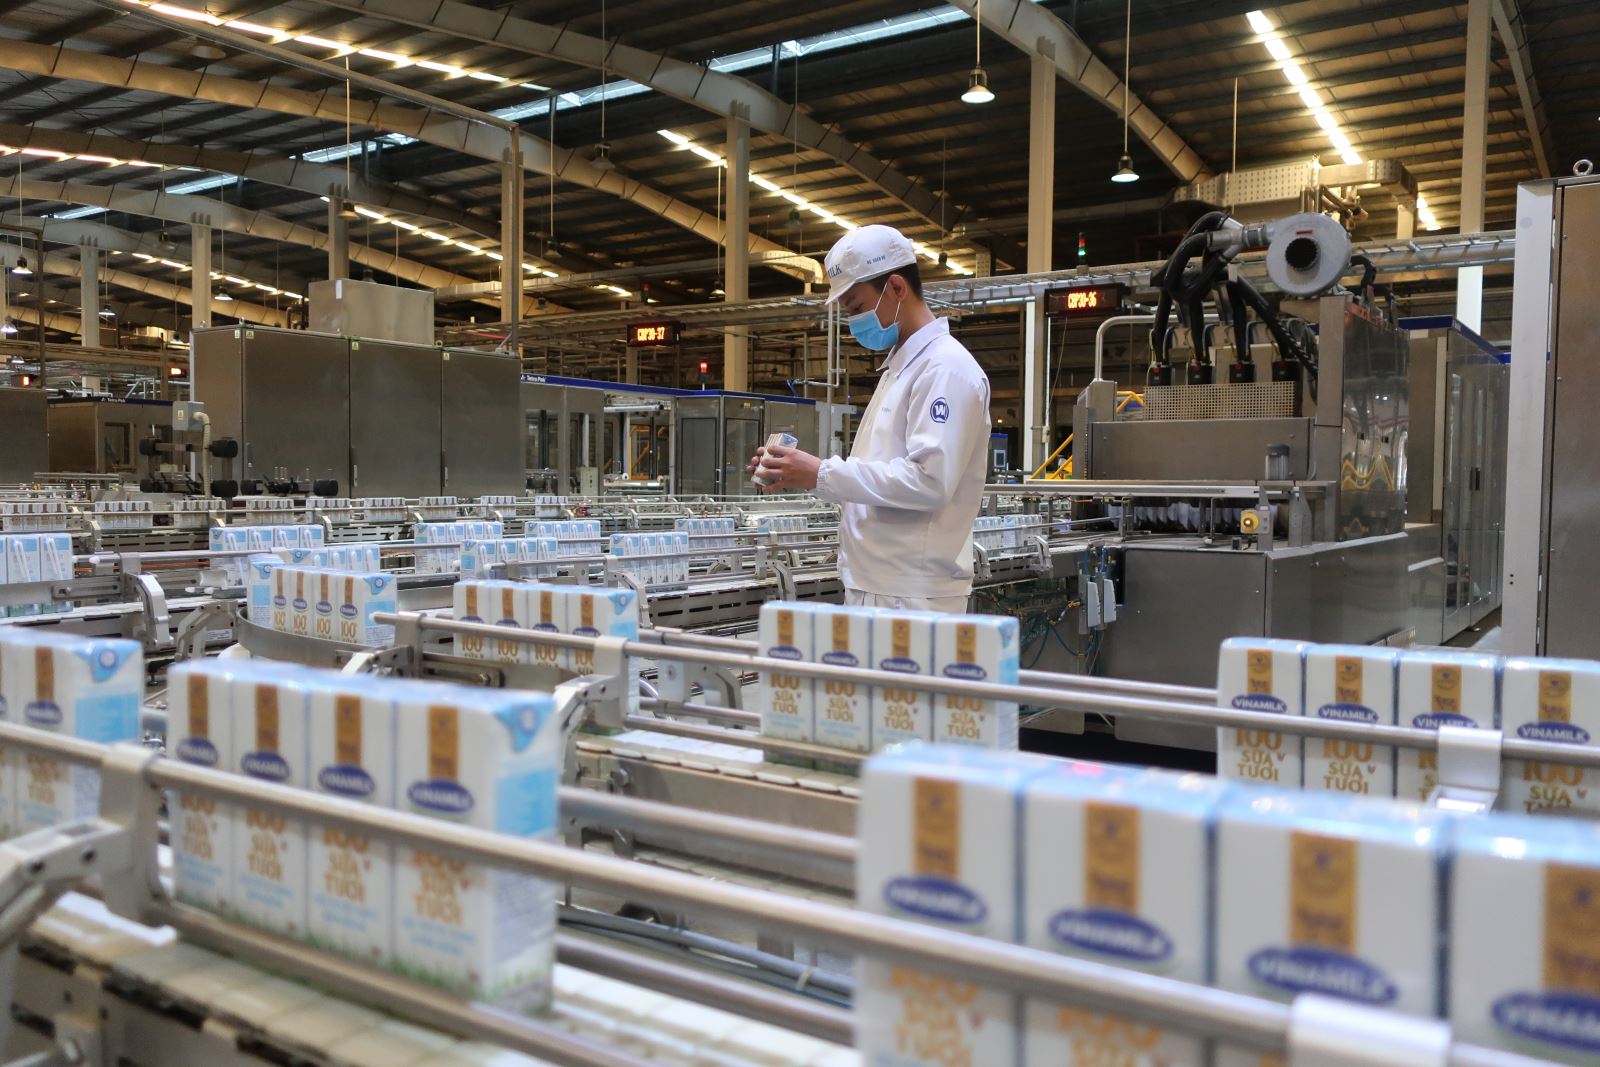 Dây chuyền hiện đại tại Nhà máy sữa Việt Nam, nhà máy sản xuất sữa nước có công suất lớn nhất của Vinamilk hiện nay, lên đến 800 triệu lít/năm